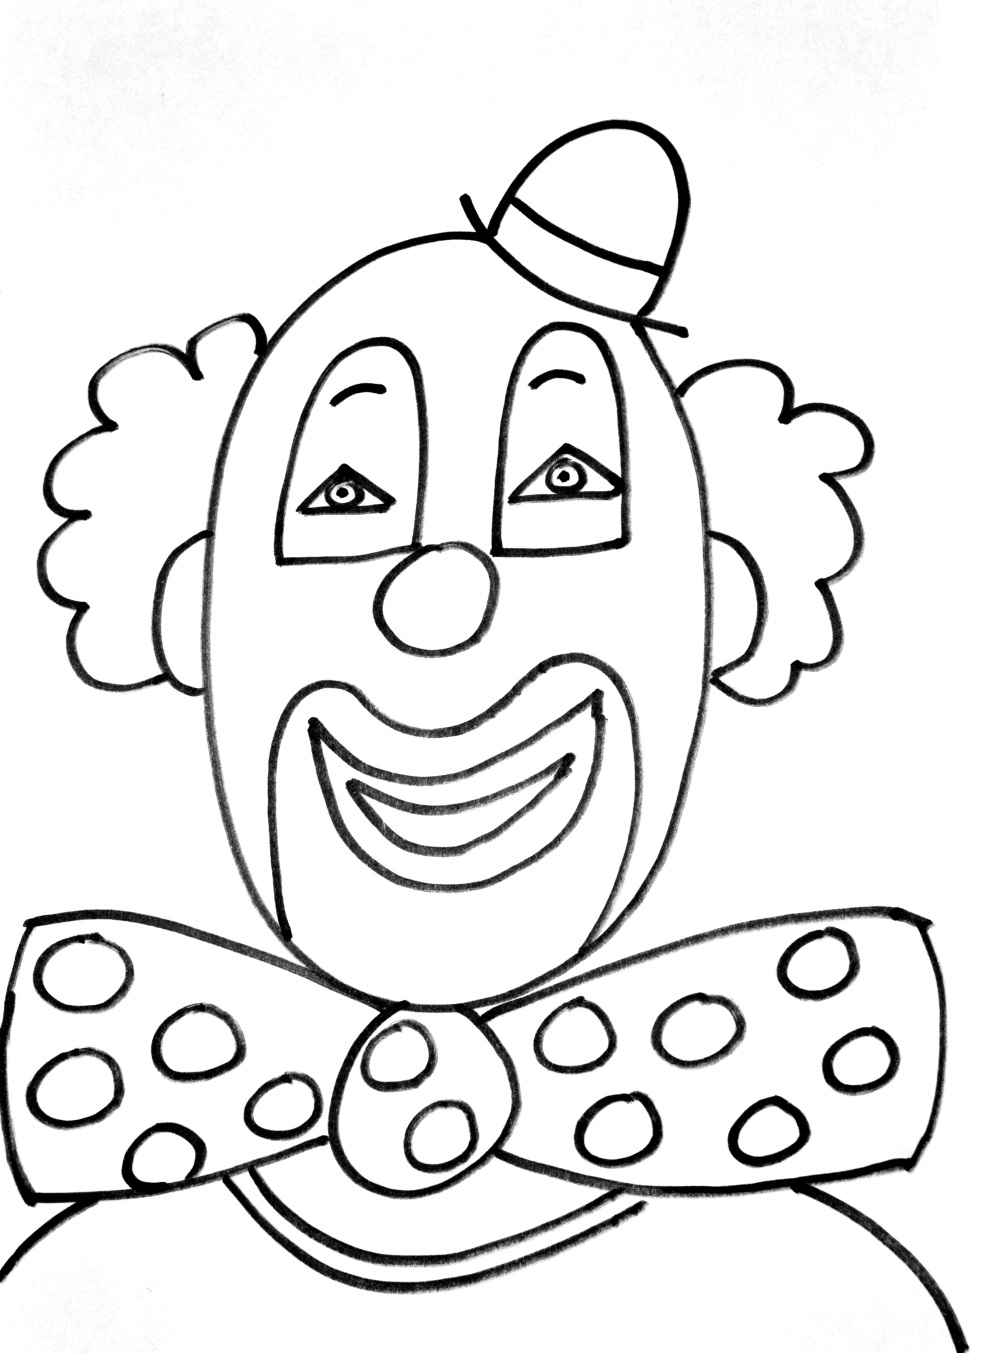 Un joli Clown tout simple à colorier